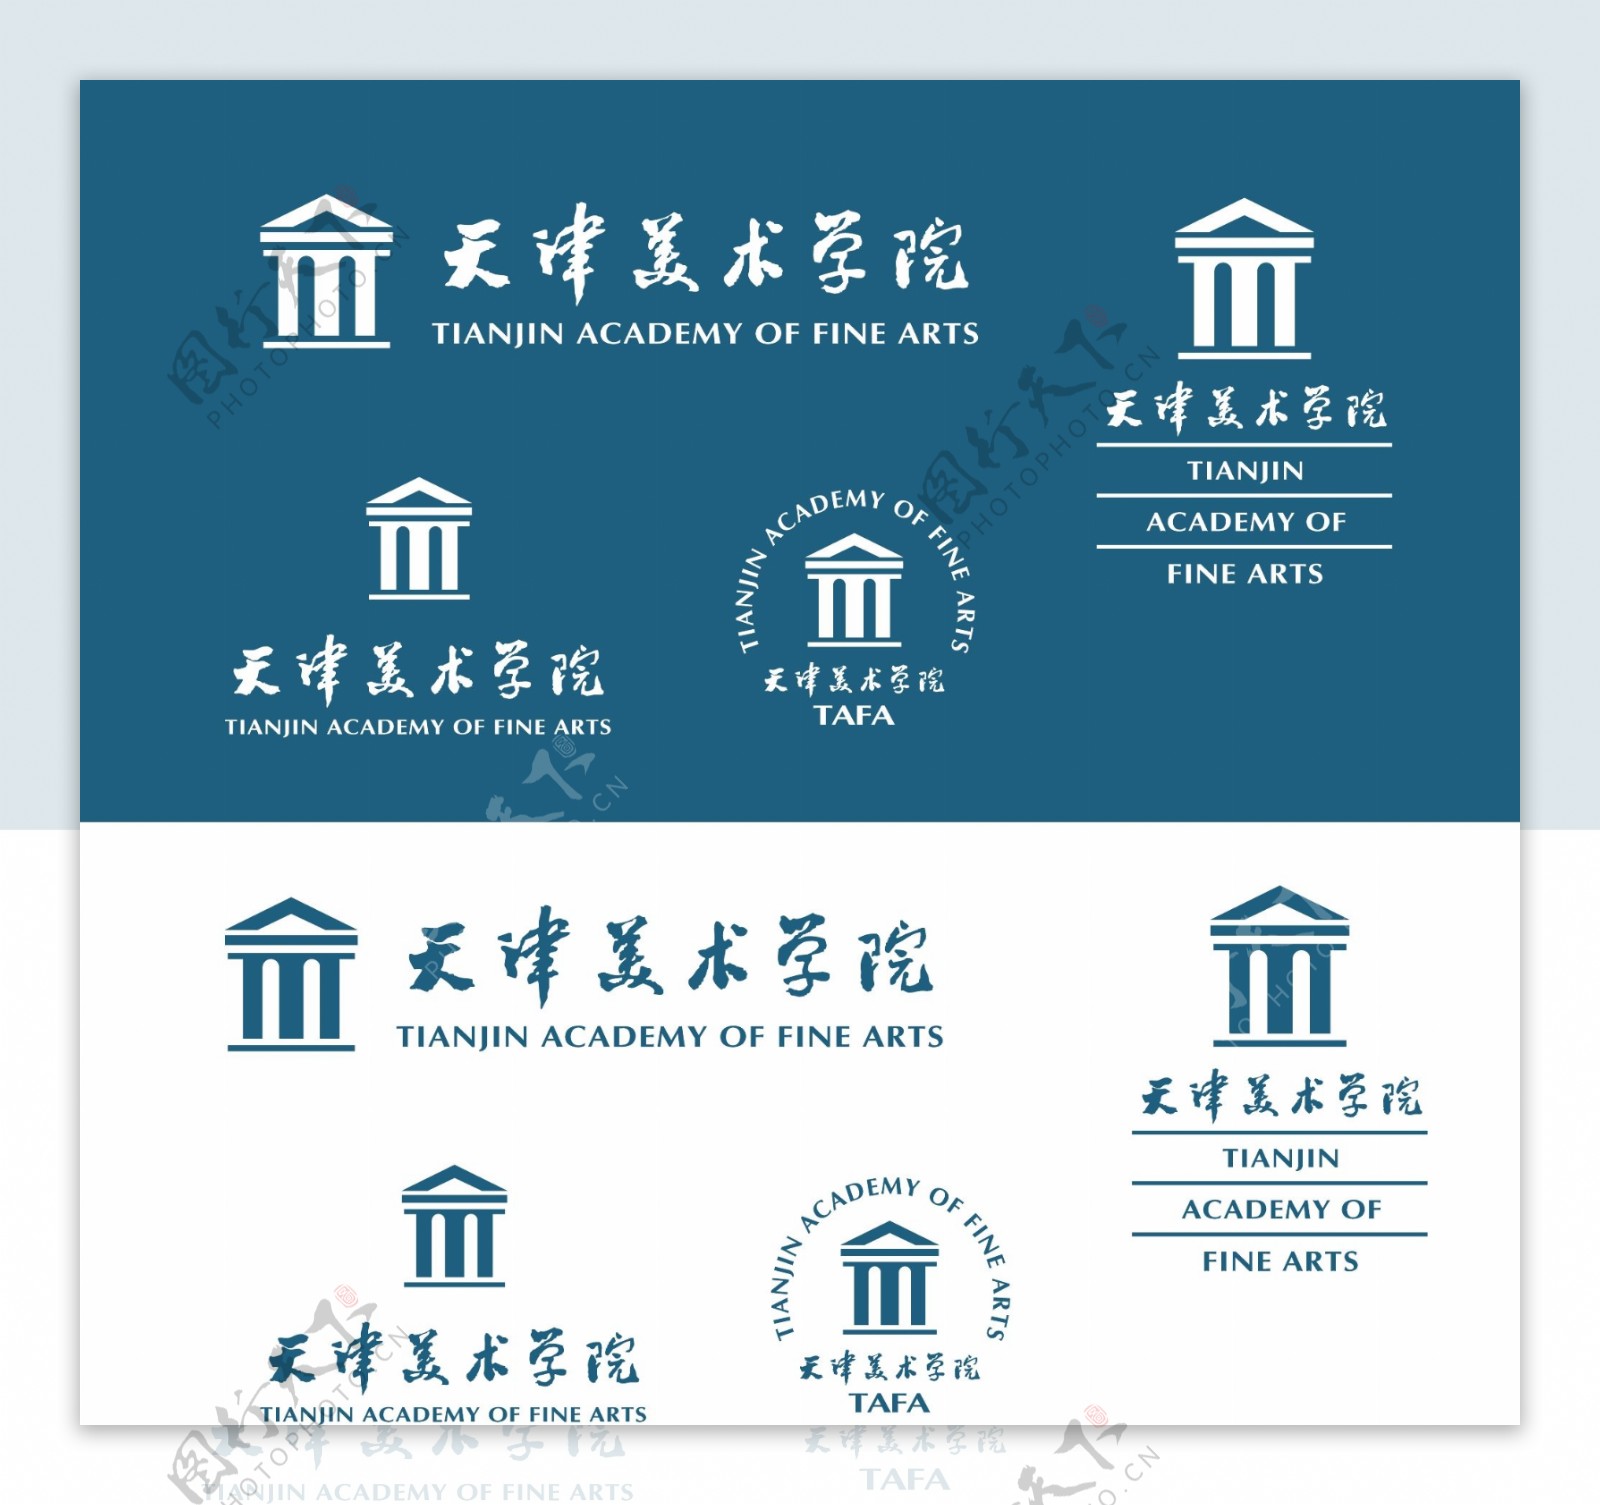 天津美术学院的校徽